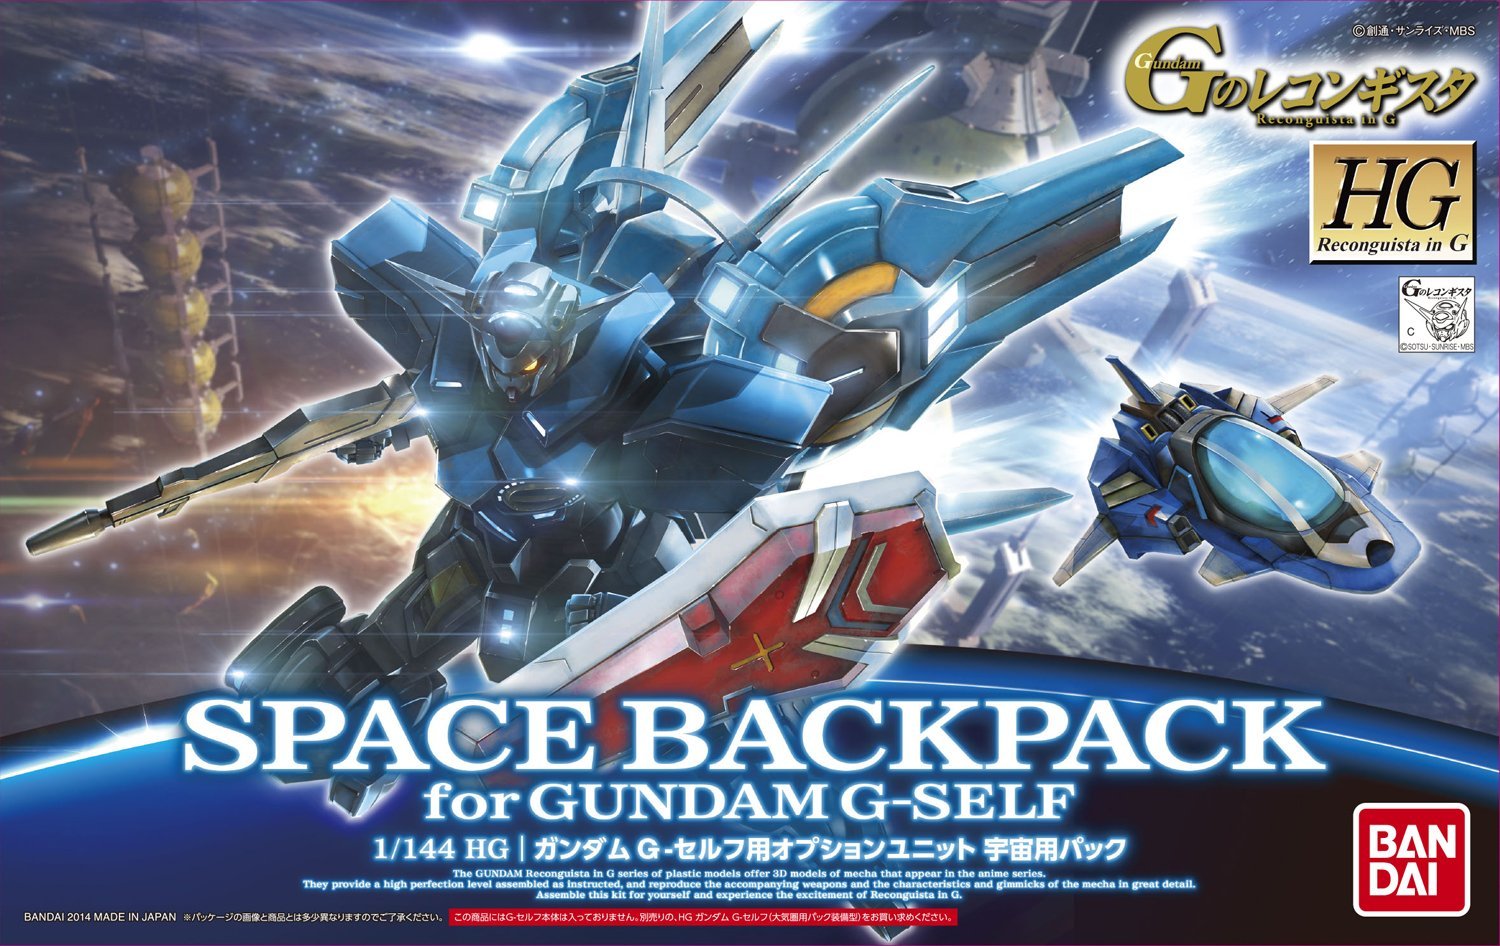 Gundam 1/144 HG Reconguista G  #05 Space Backpack for Gundam G-Self Model Kit